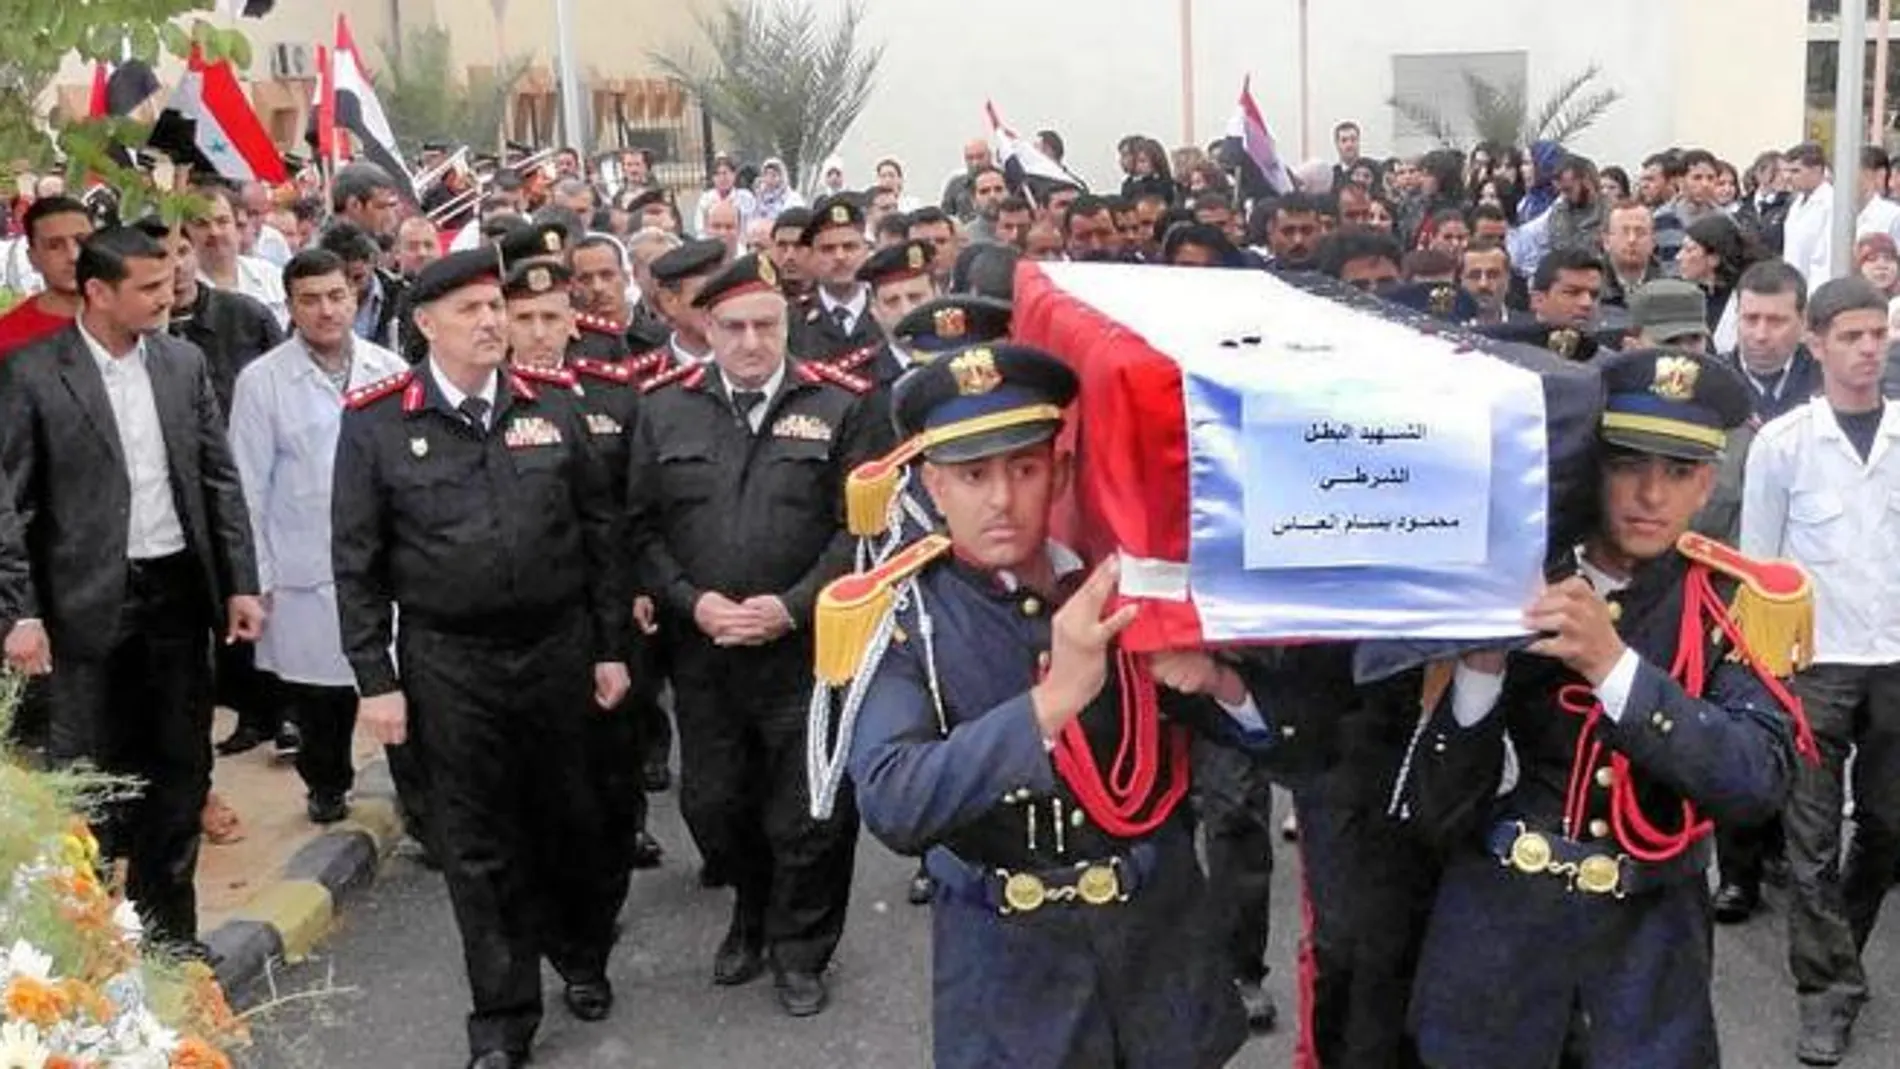 El funeral ayer por tres policías en Tishrin que murieron en los choques, sirve de presagio de que la crisis en Siria derivará en una guerra armada entre las dos facciones